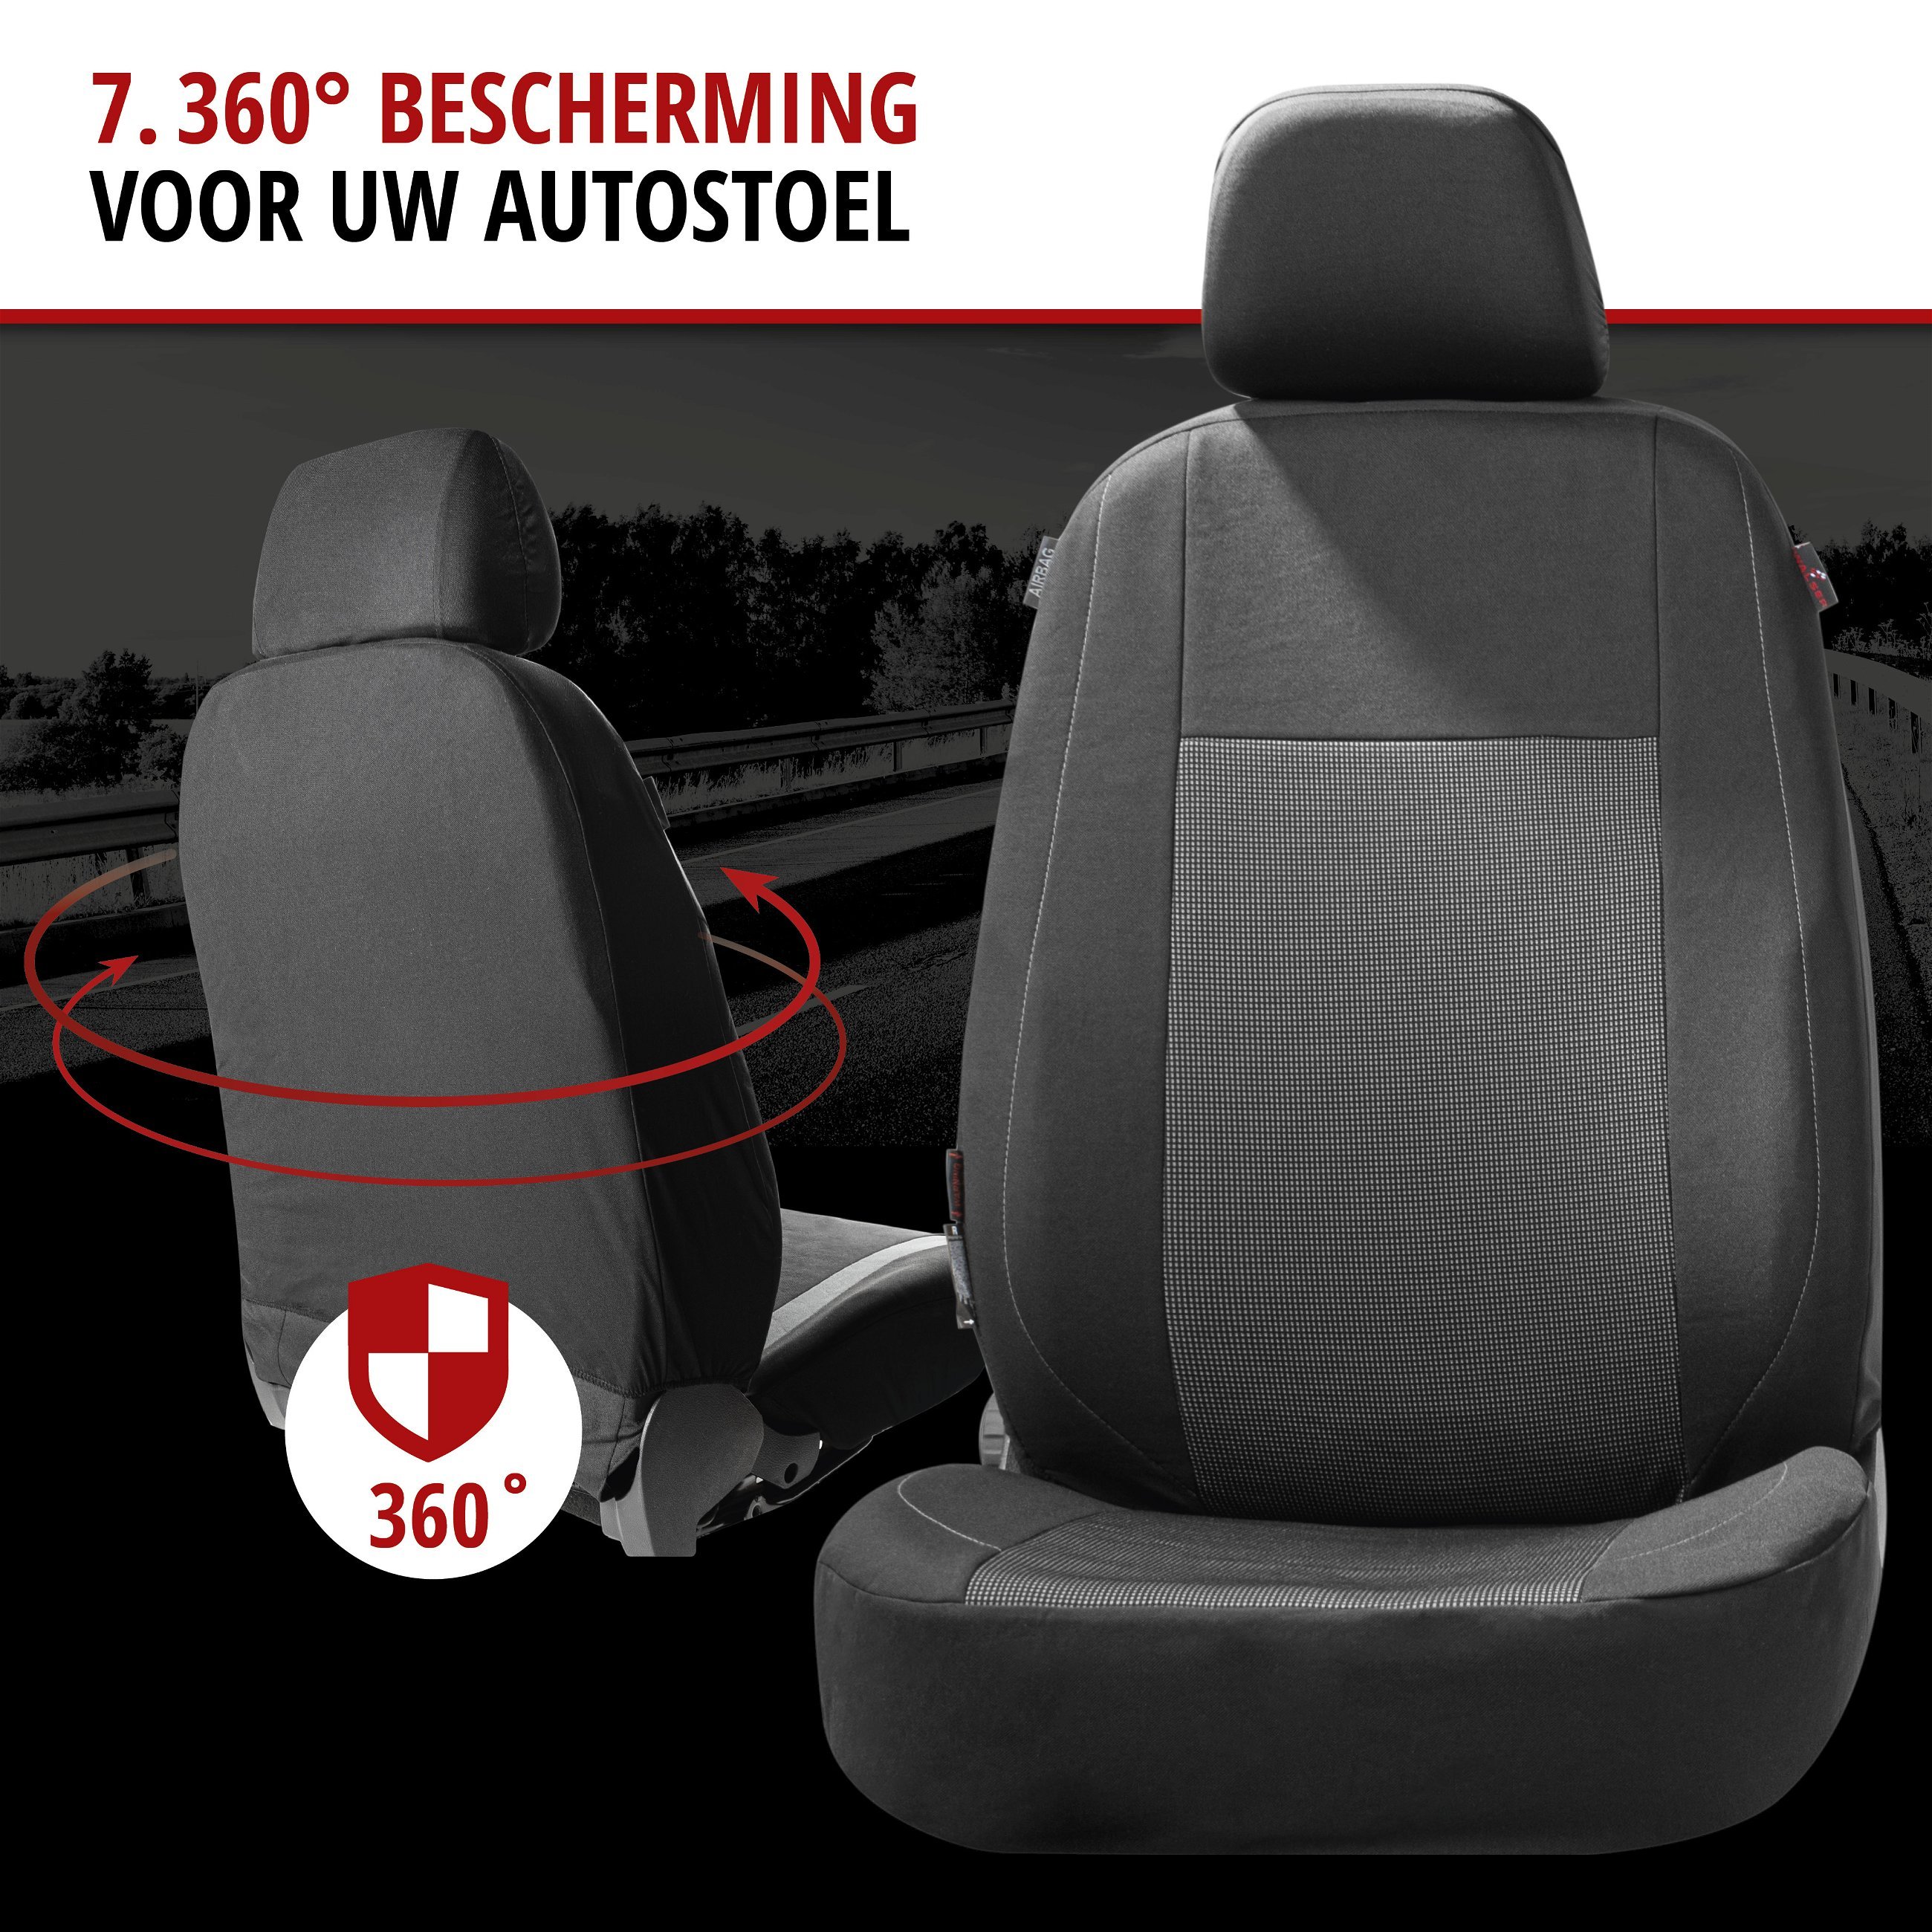 Premium Autostoelbekleding Ardwell met Zipper ZIPP-IT, Autostoelhoes set, 2 stoelbeschermer voor voorstoel, 1 stoelbeschermer voor achterbank zwart/grijs